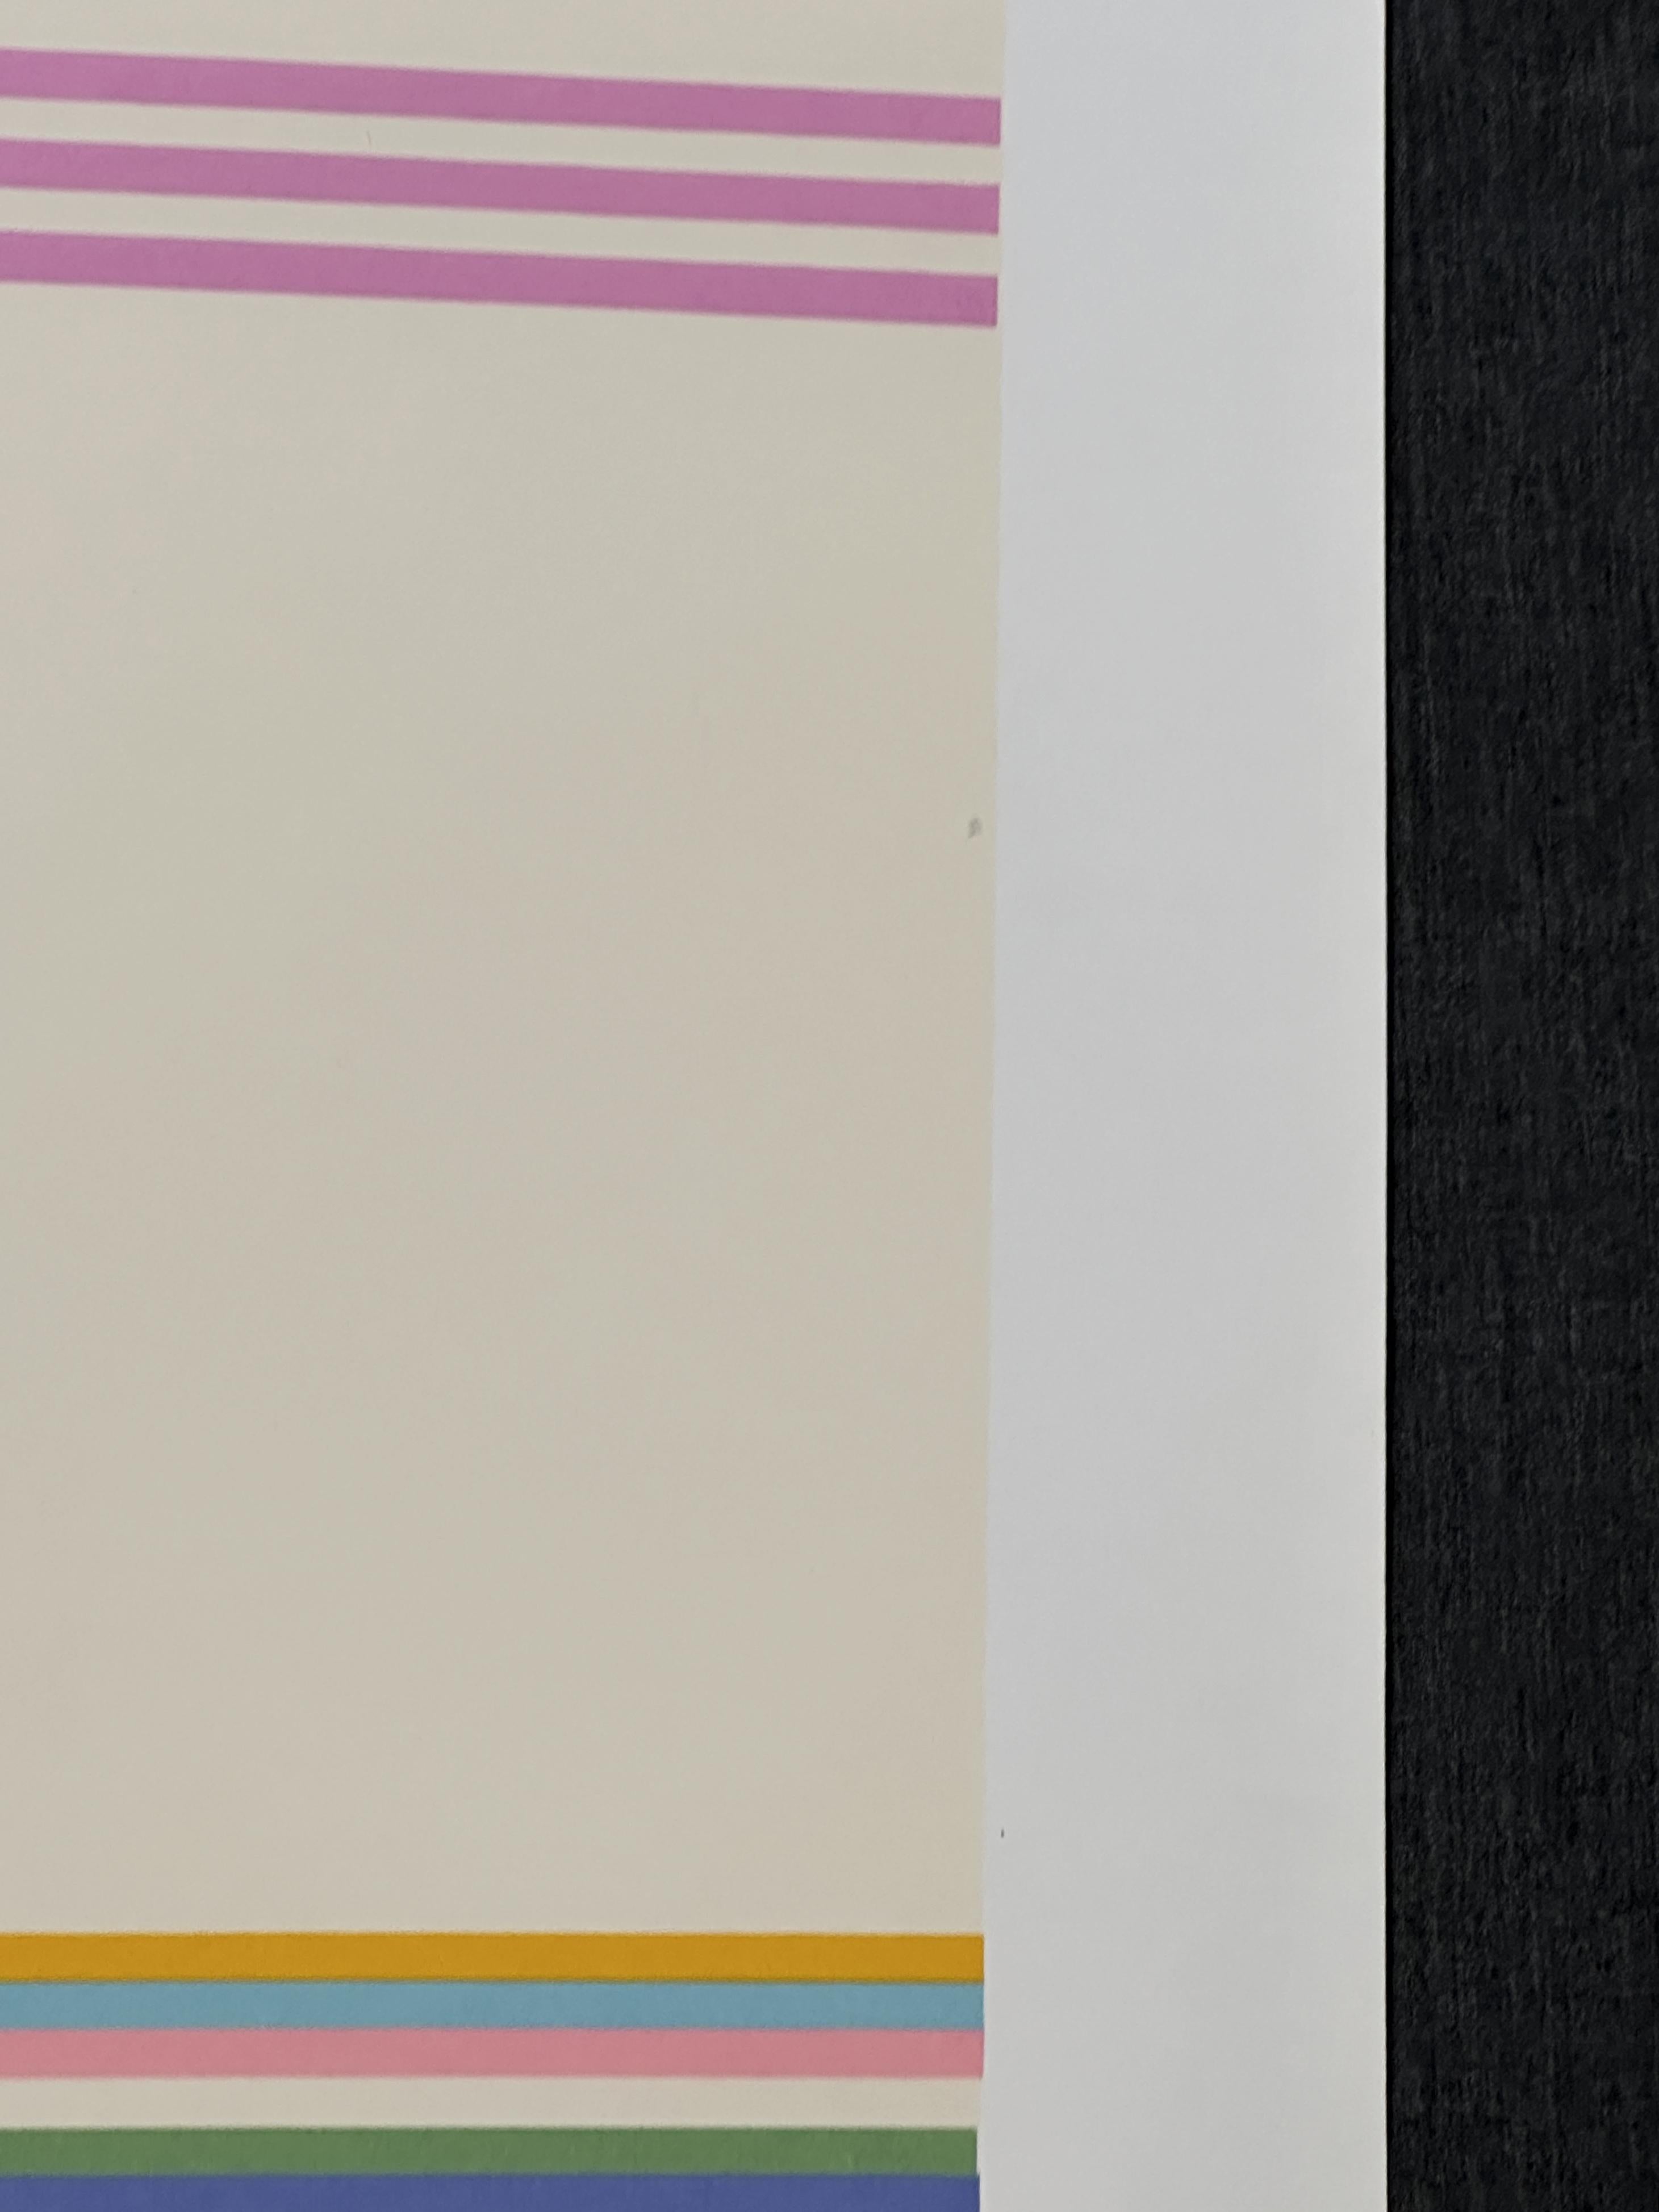 Étoile filante - 1979
Impression - Sérigraphie 36.5'' x 36.75''
Edition : Signé au crayon, daté et marqué 238/250
Non encadré